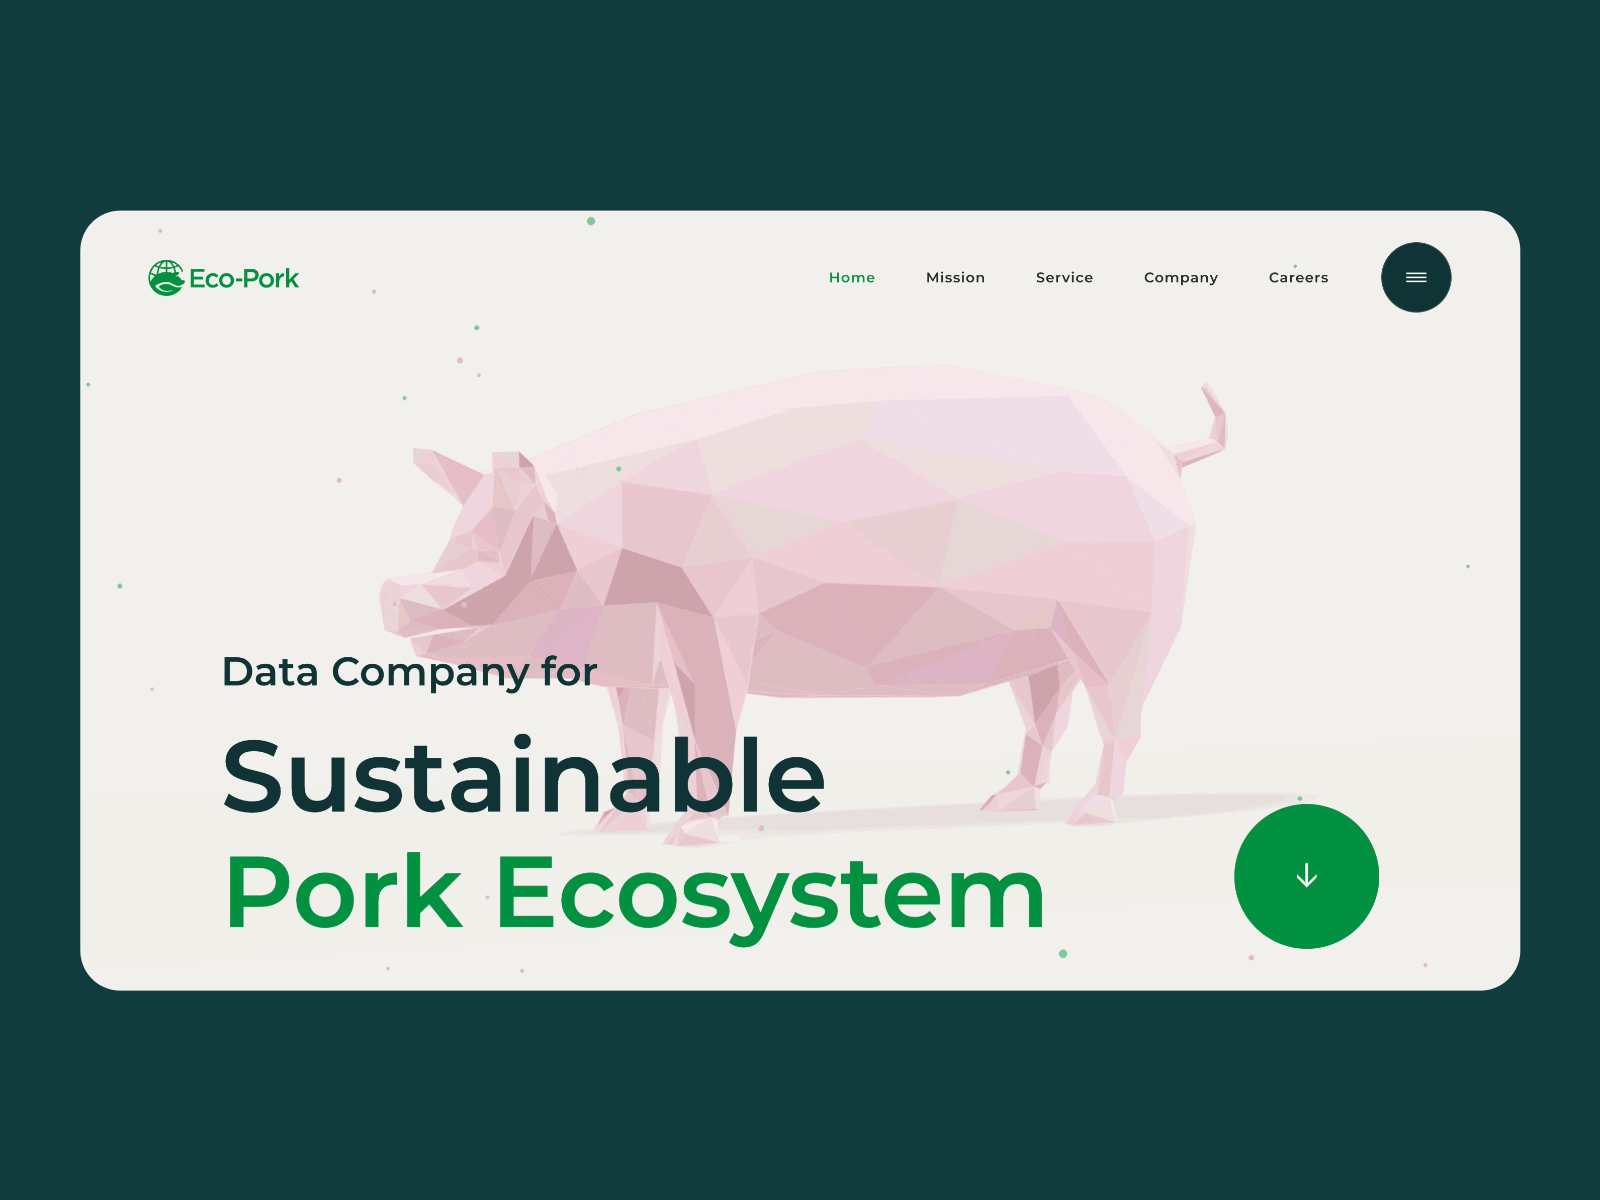 Eco-pork